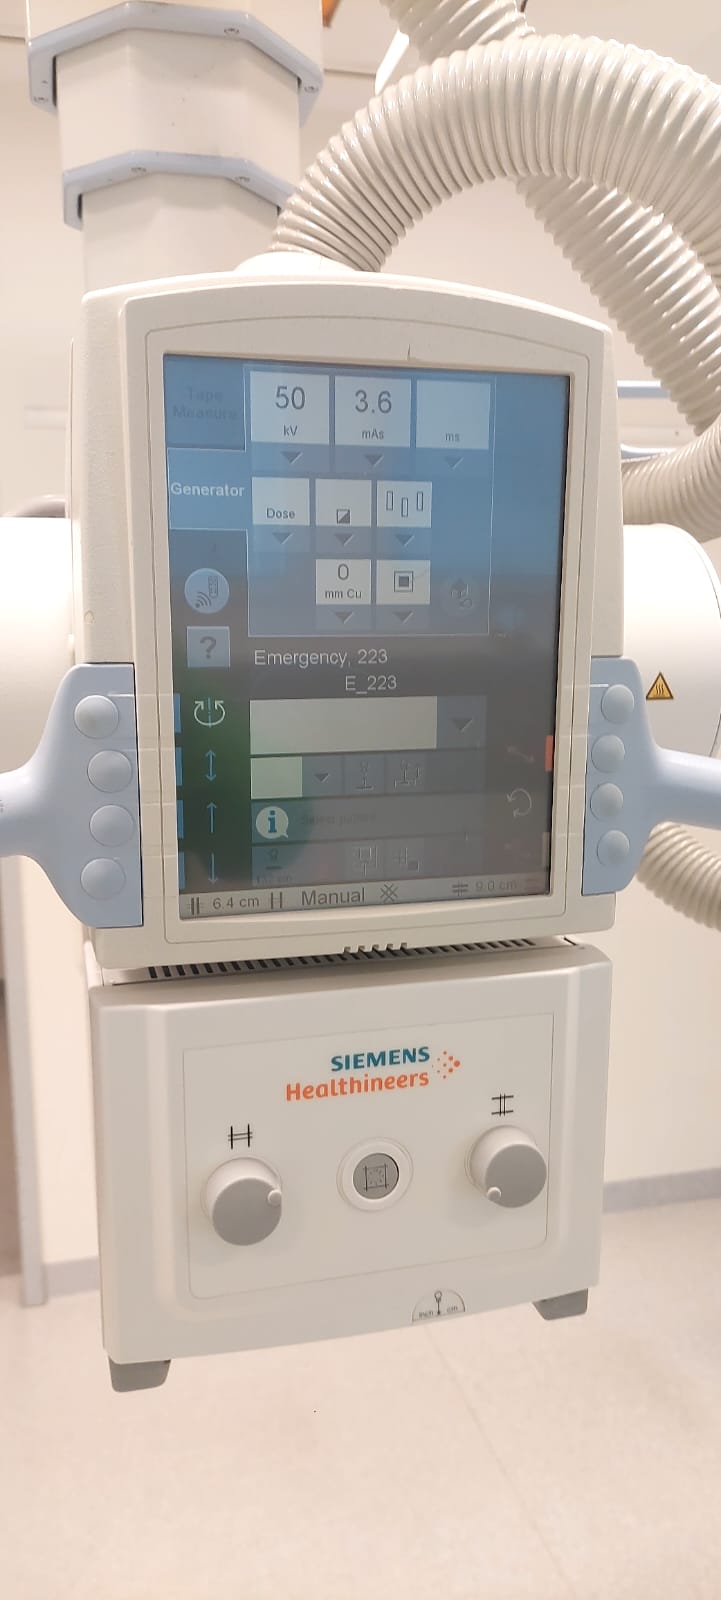 RTG kostno-płucne do radiografii używane b/d Siemens Ysio - medsystems rekondycjonowany